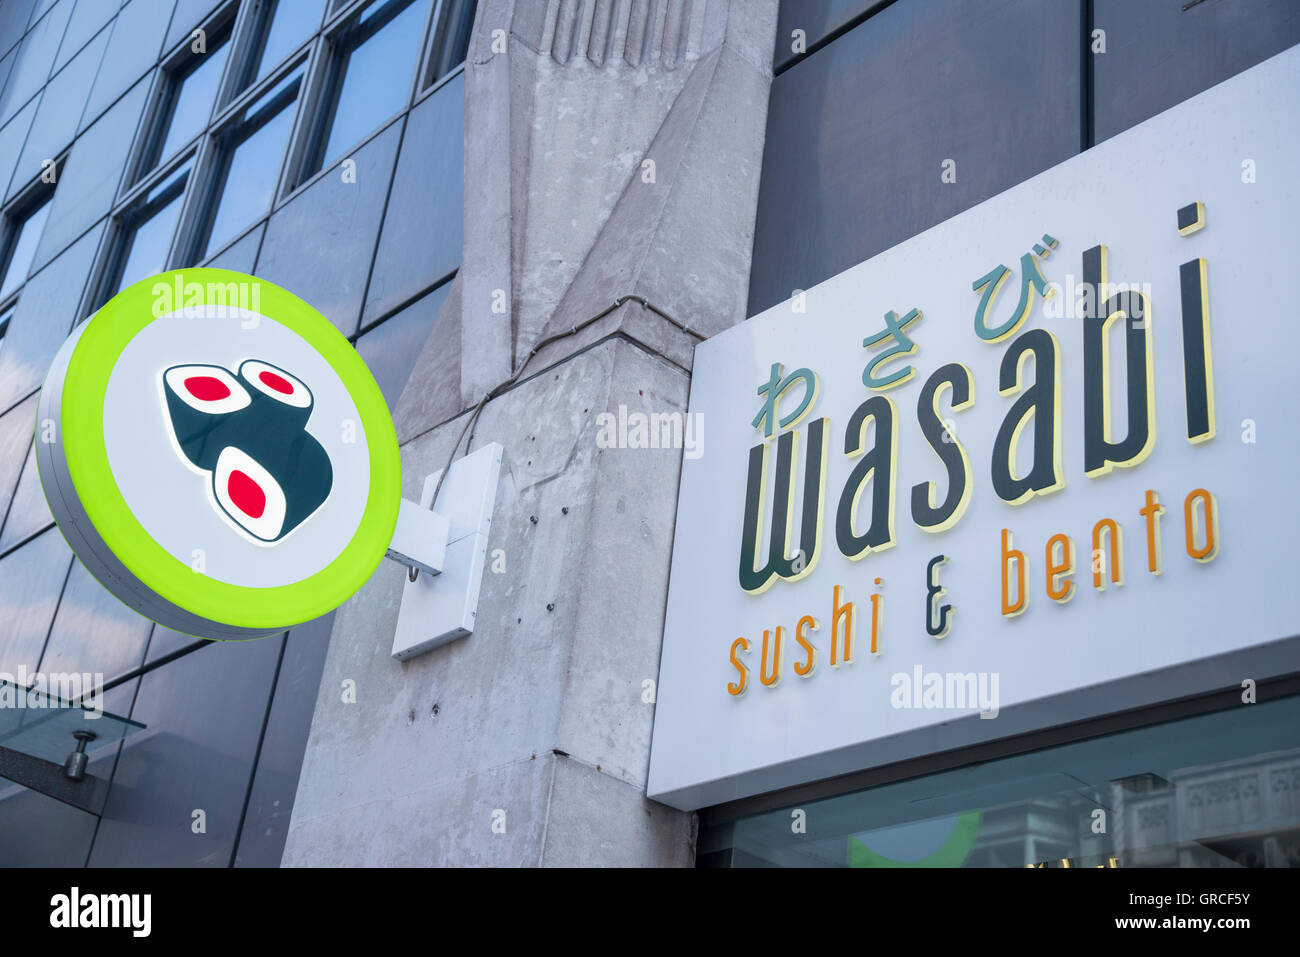 Wasabi Sushi & Bento Japanese cafe restaurant Central London, UK Stock Photo